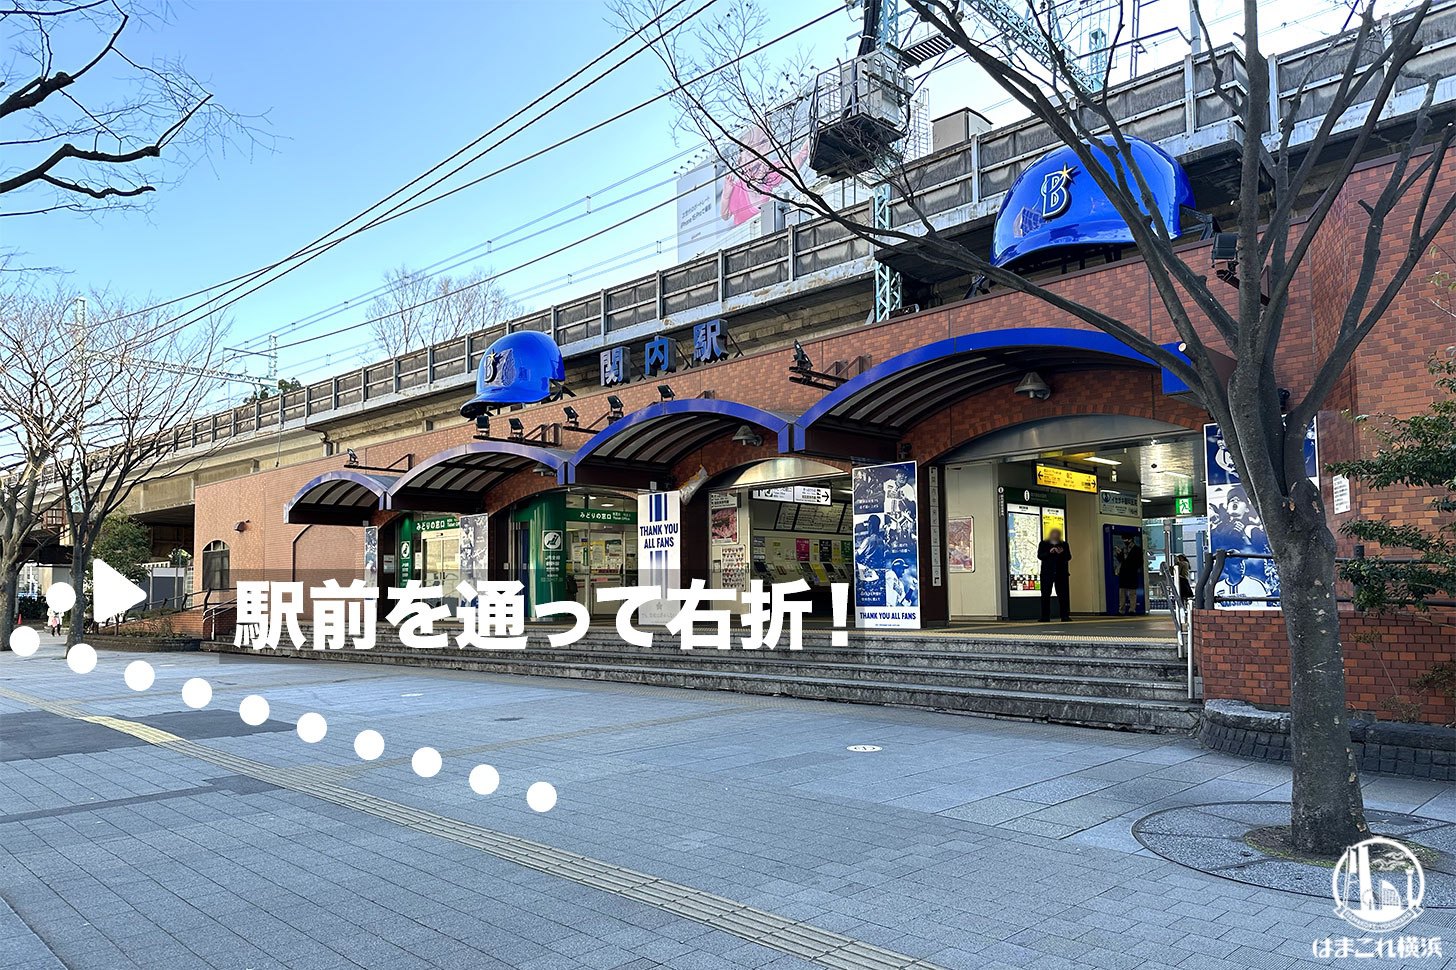 JR関内駅 駅前